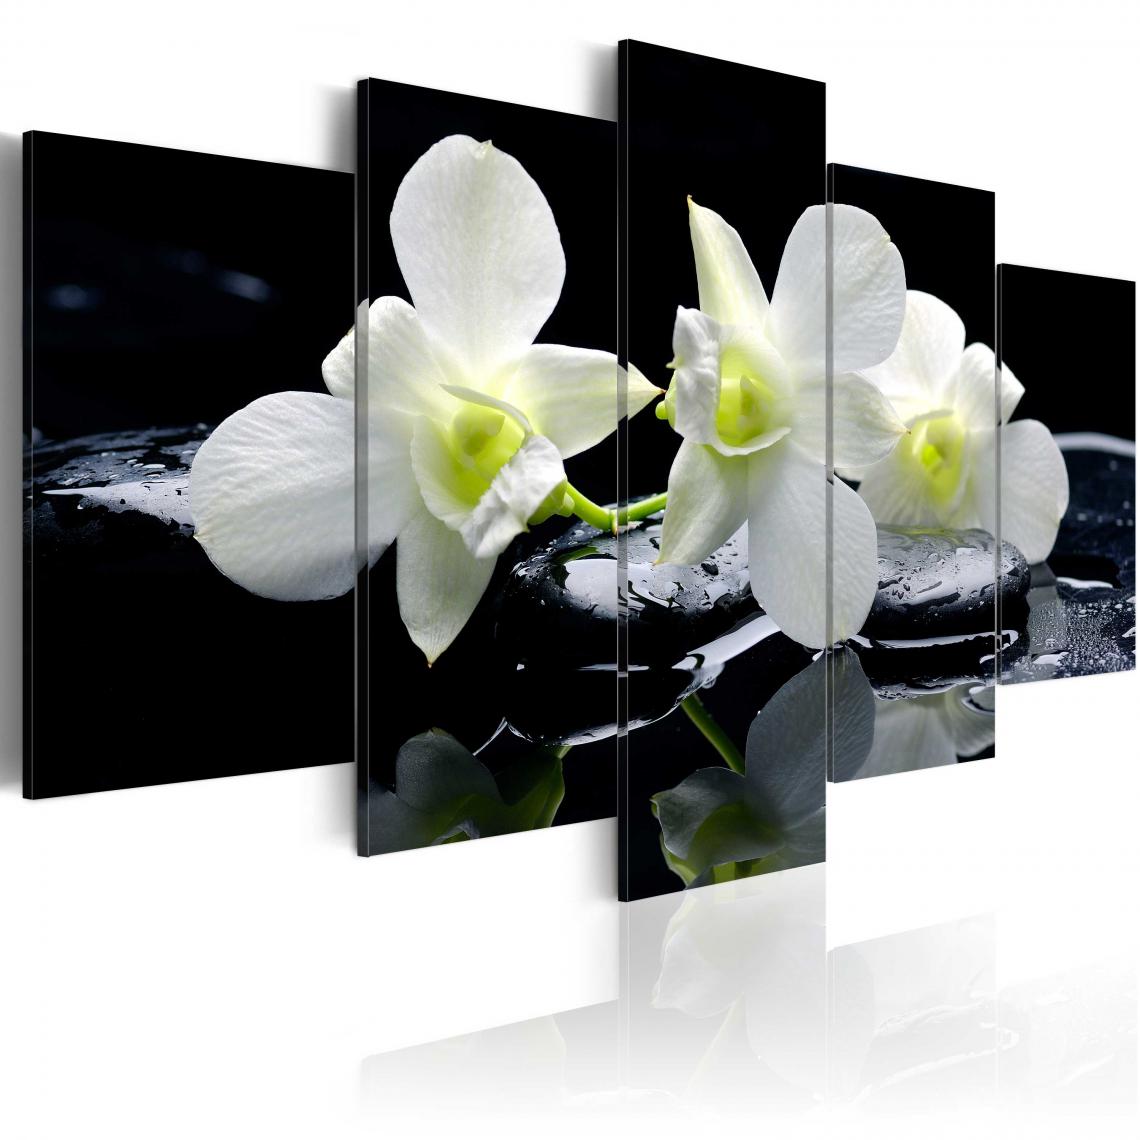 Decoshop26 - Tableau sur toile en 5 panneaux décoration murale image imprimée cadre en bois à suspendre Orchidées mélancoliques 200x100 cm 11_0005569 - Tableaux, peintures